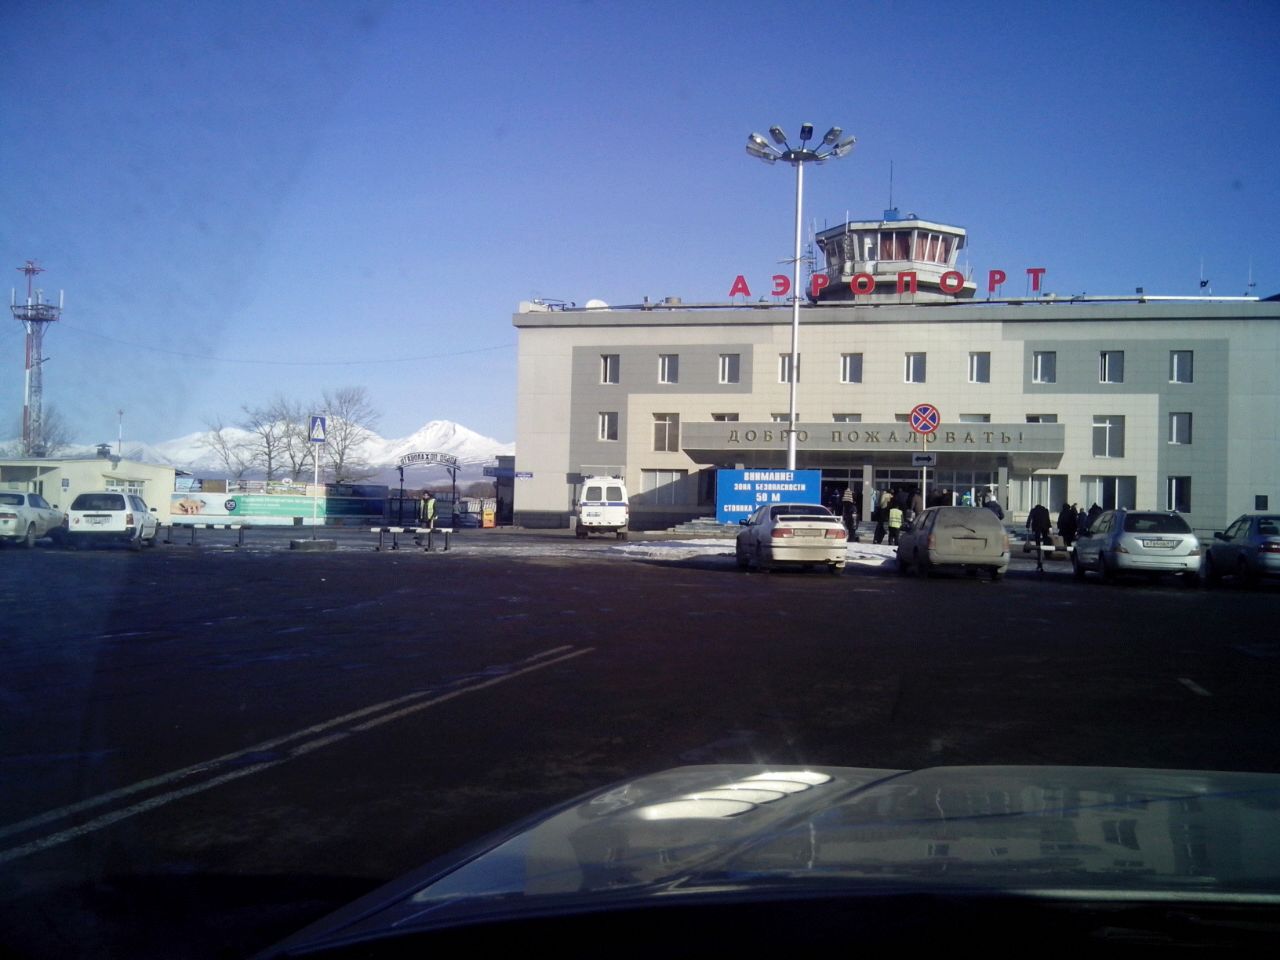 аэропорт в петропавловске камчатском